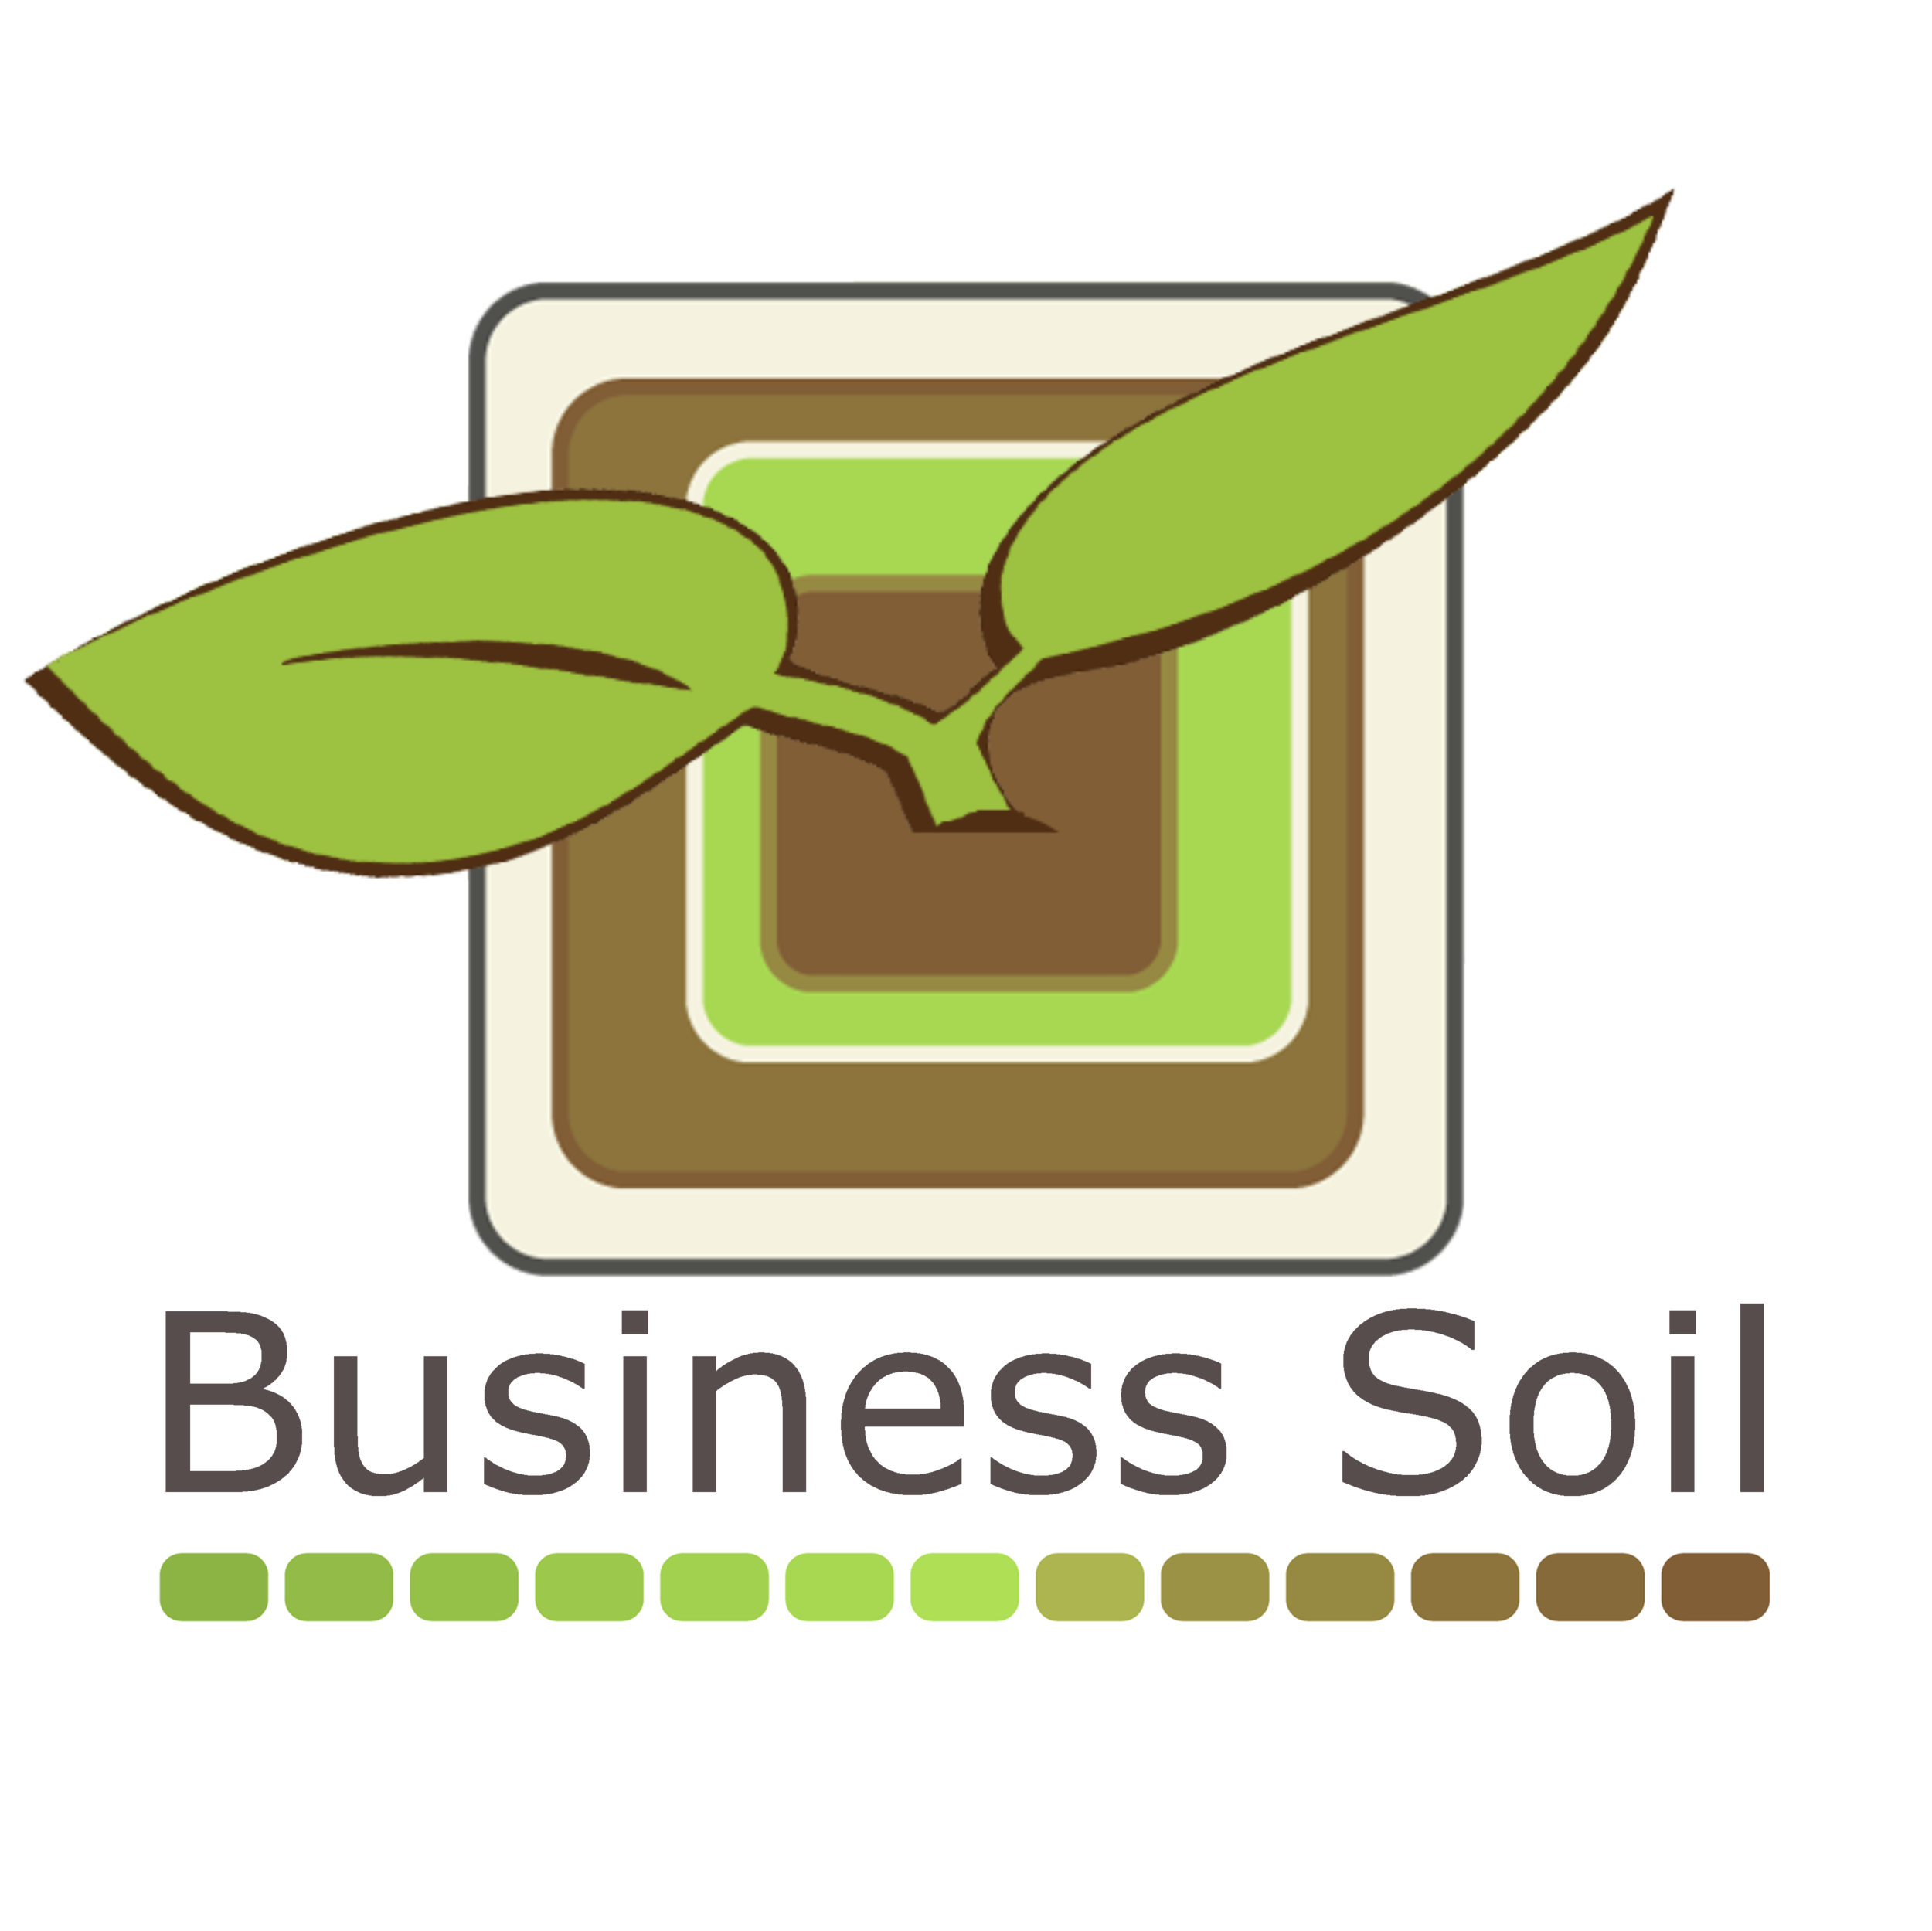 Business Soil